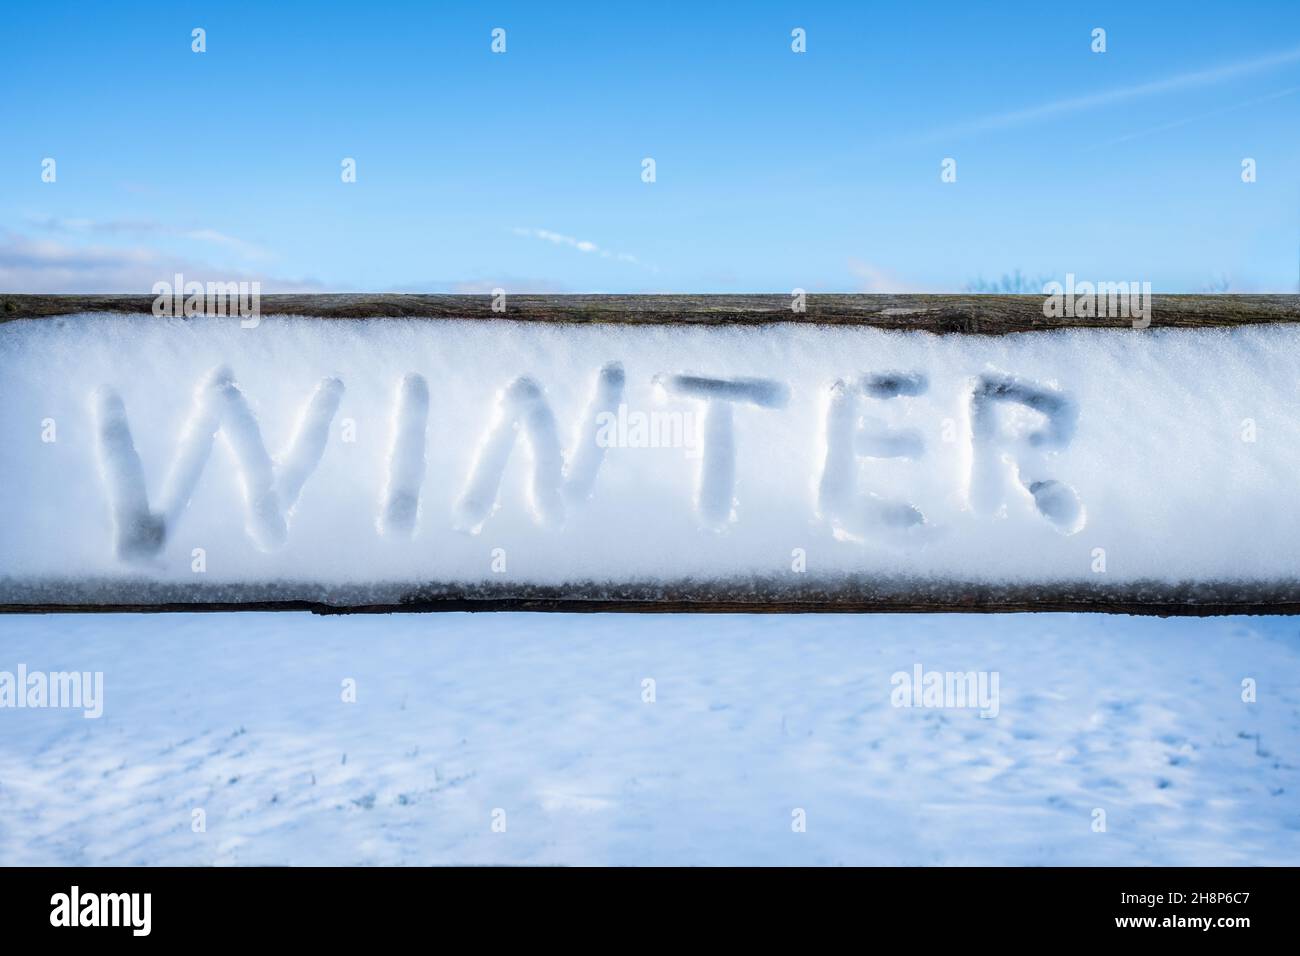 Das Wort „Winter“ wurde an einem sonnigen Wintertag im Schnee auf einer Holzdiele handgeschrieben. Unberührtes schneebedecktes Feld und blauer Himmel im Hintergrund. Winterkonzept Stockfoto